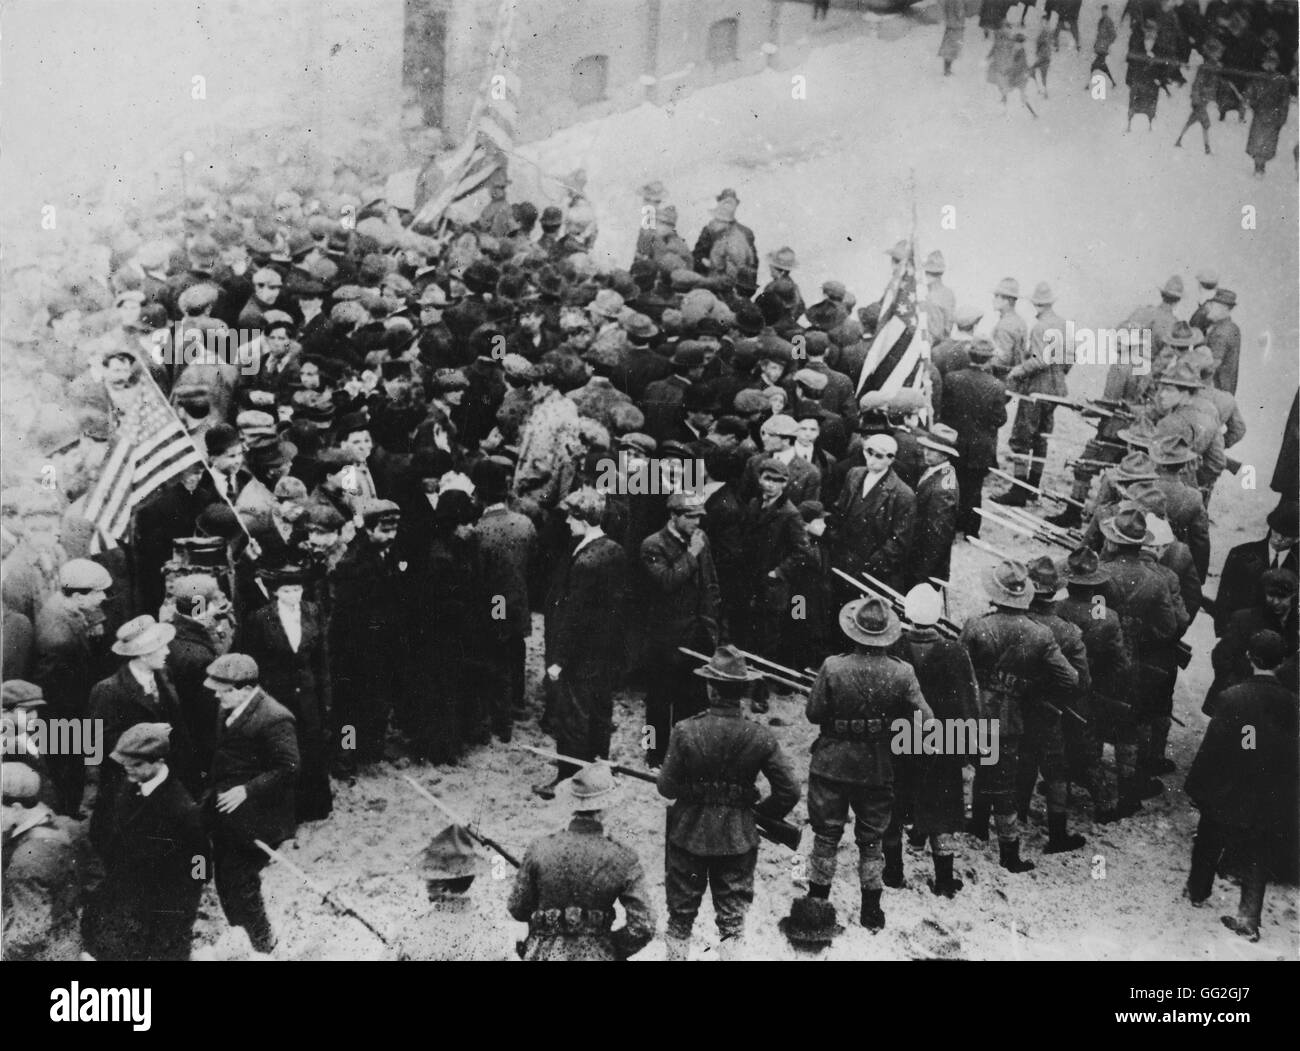 Streiks in der Textilbranche in Lawrence, Massachusetts. Foto aufgenommen im Jahre 1912 Stockfoto